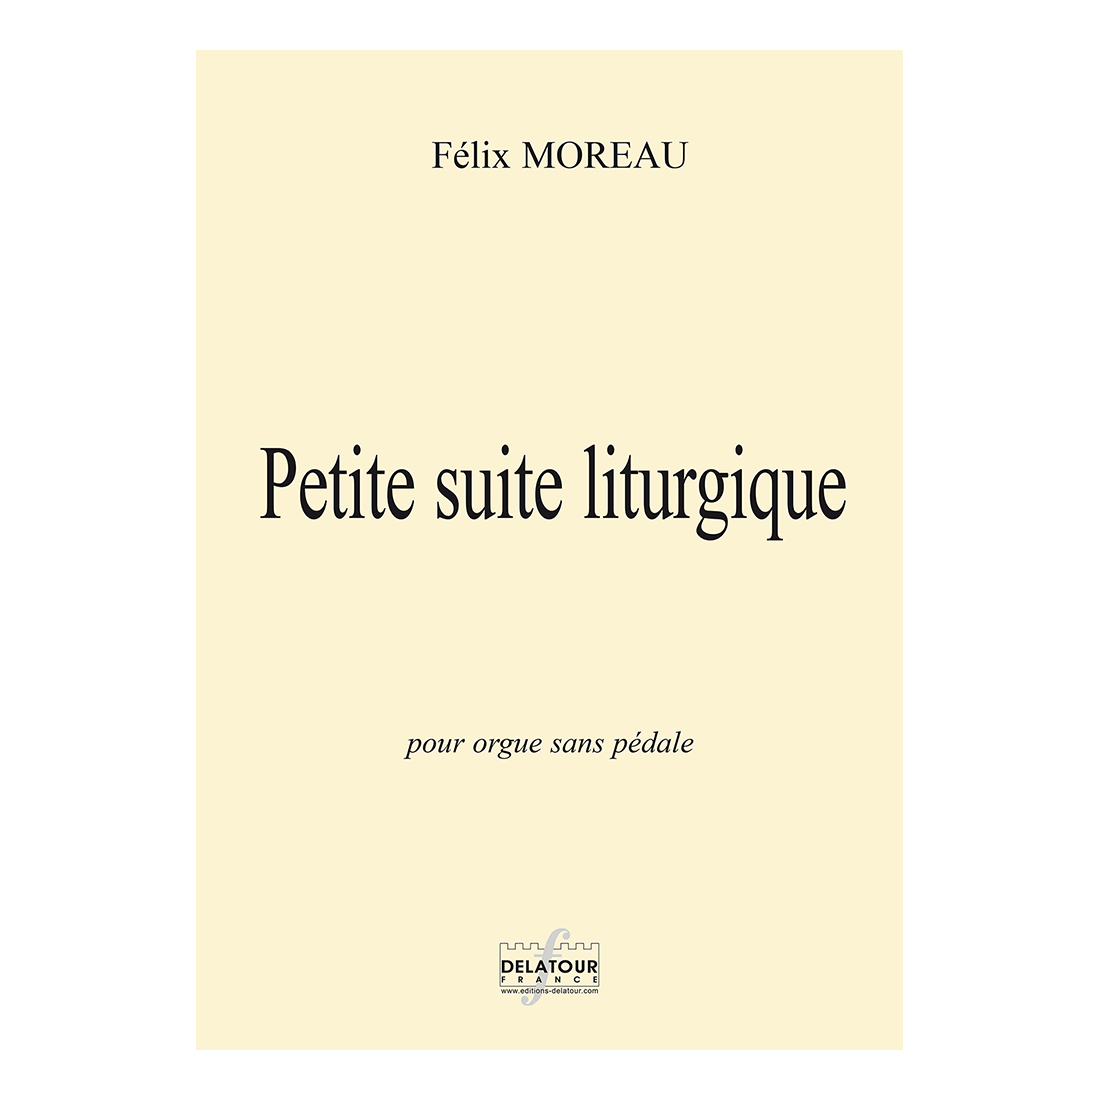 Petite suite liturgique für Orgel ohne Pedale